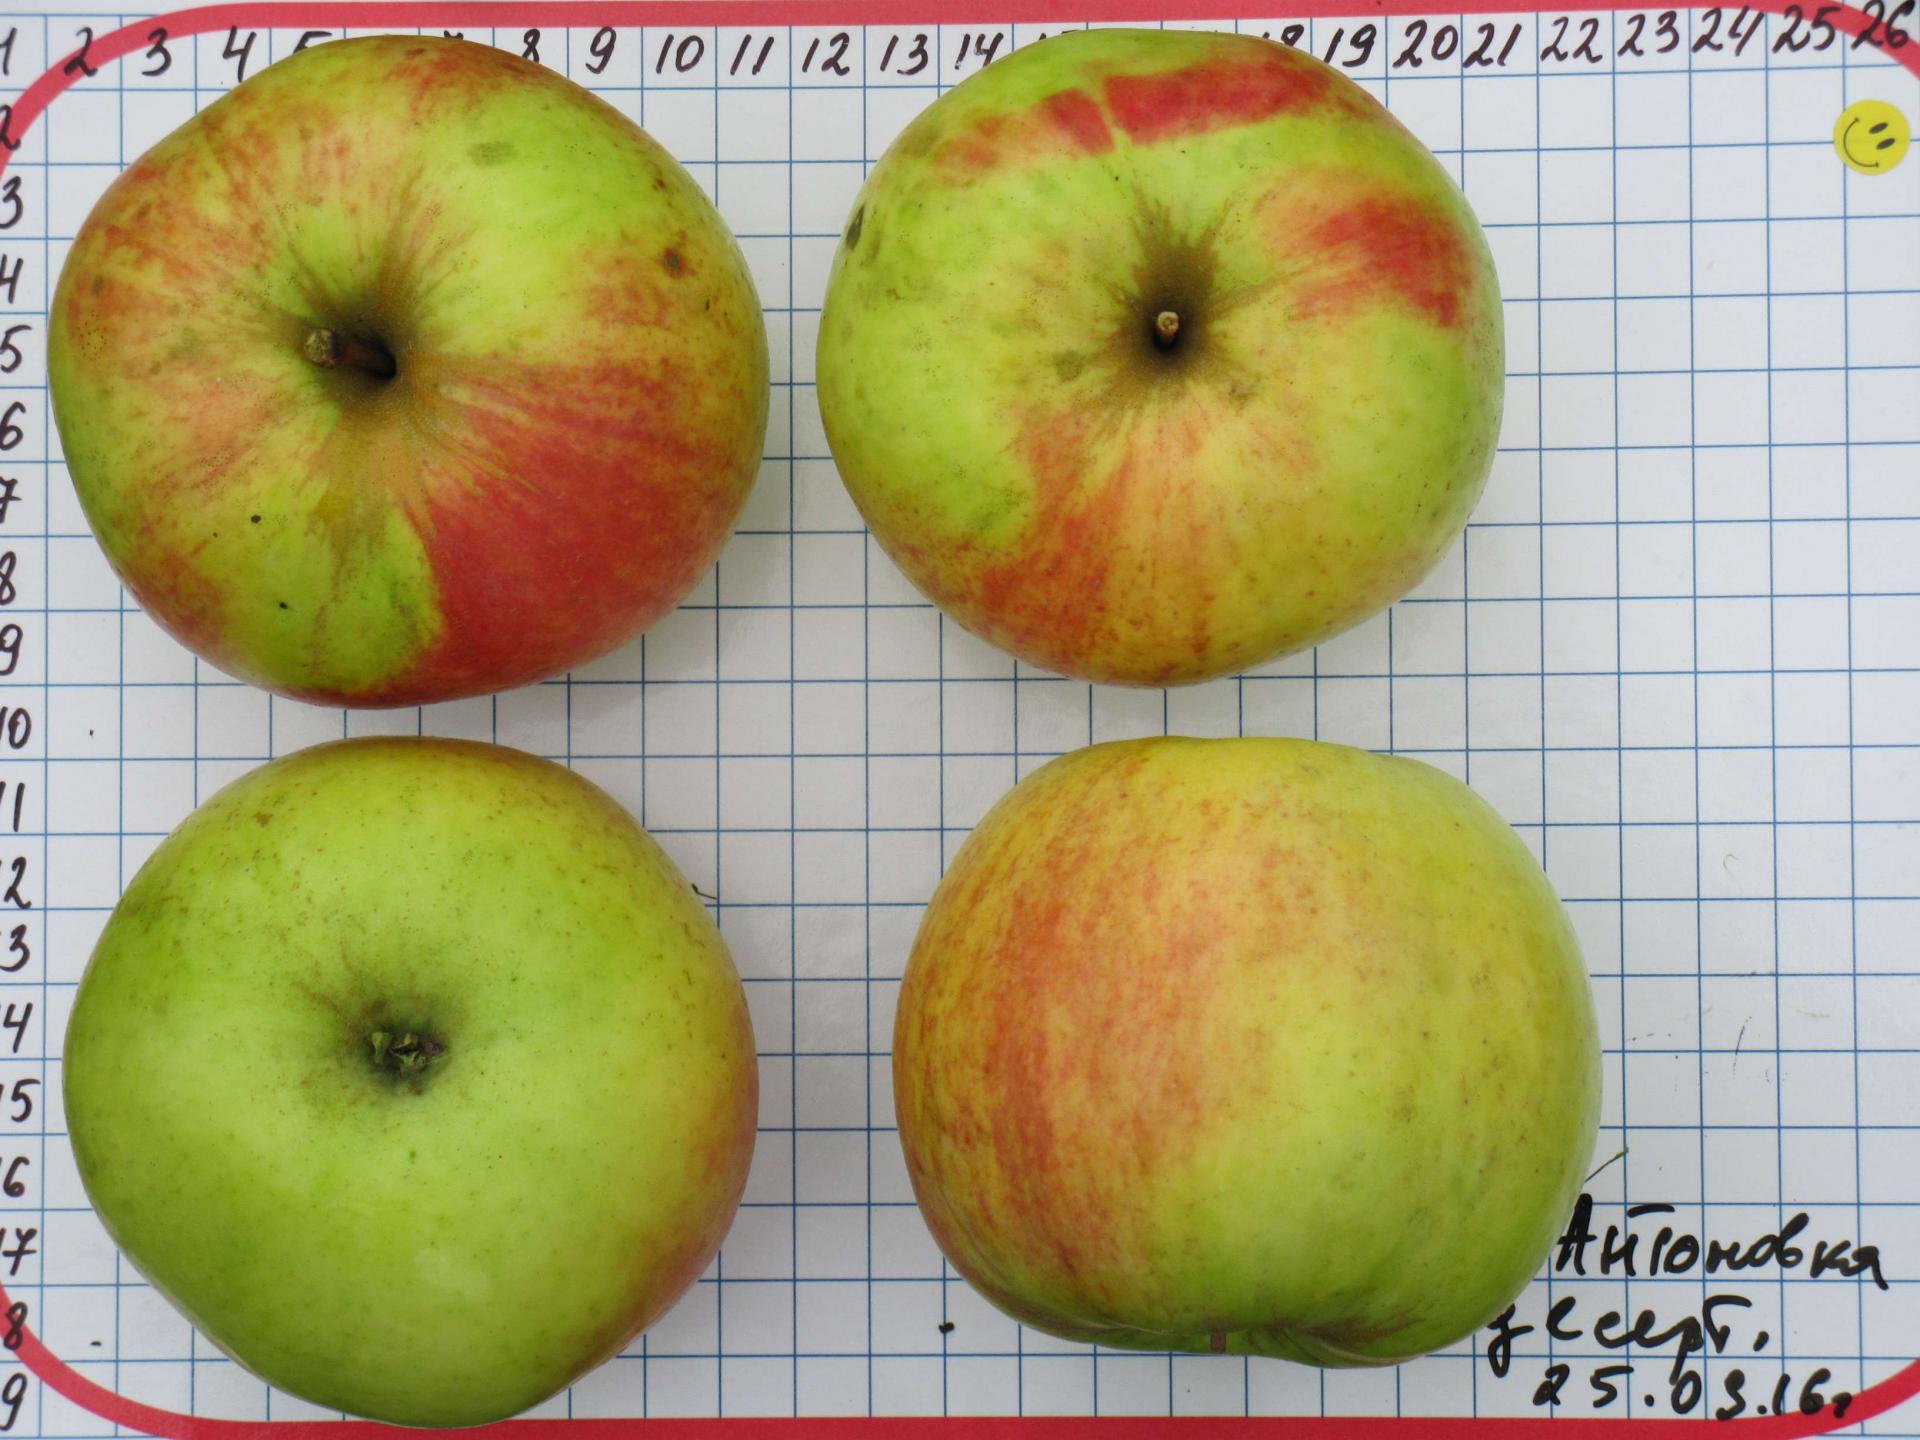 Десертное петрова яблоня описание сорта фото